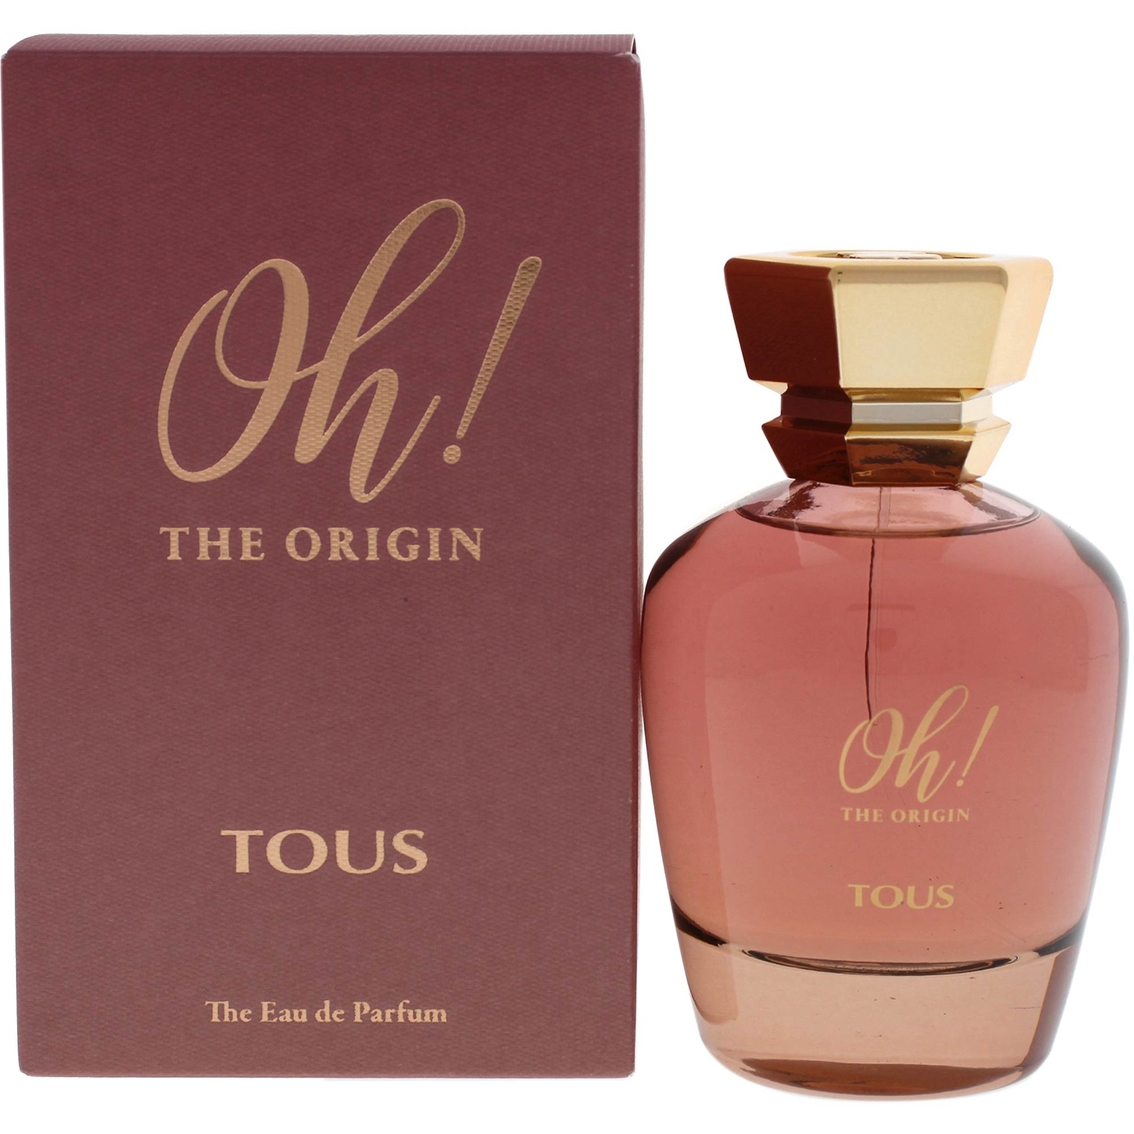 Oh The Origin By Tous For Women Eau De Parfum Spray 3.4 Oz. | Women's ...